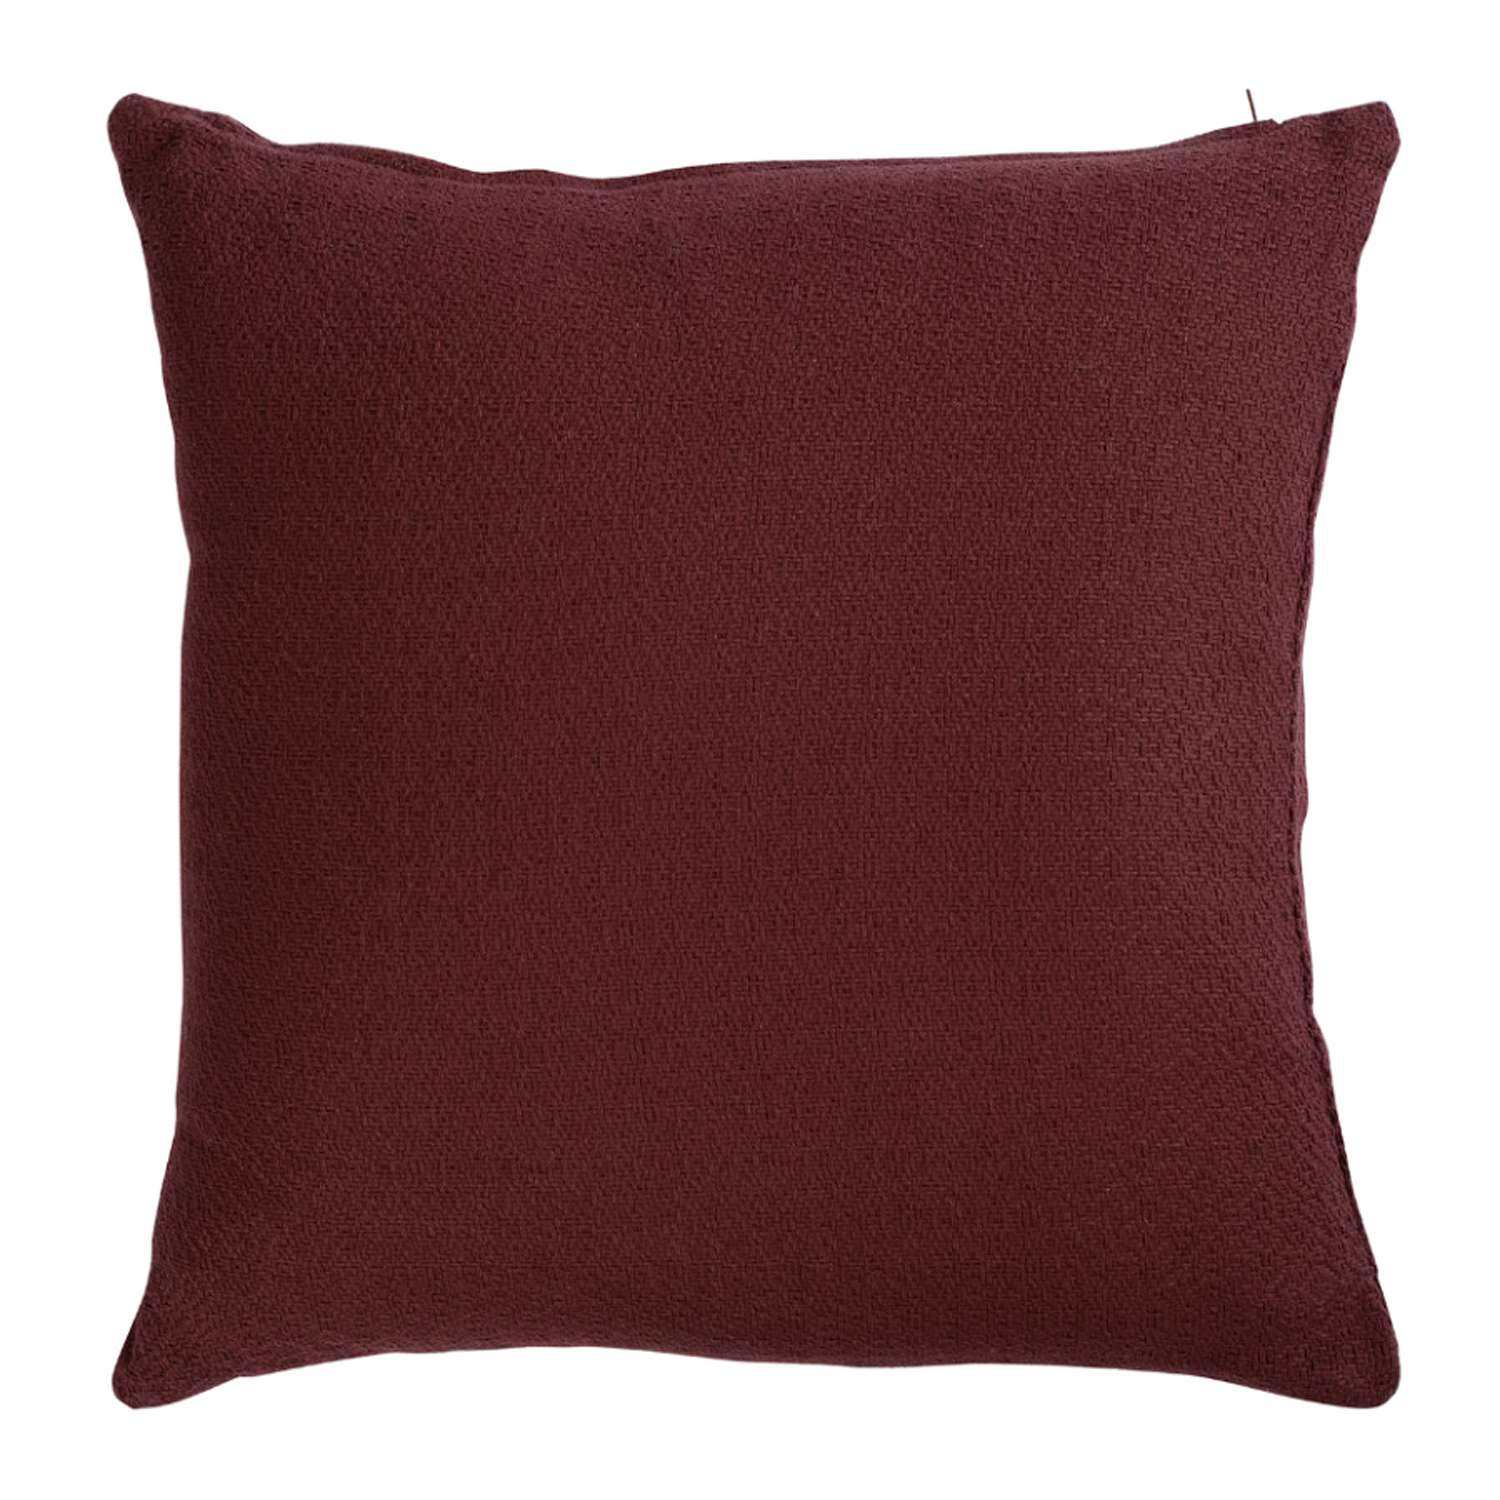 Подушка Tkano декоративная из хлопка фактурного плетения бордового цвета 45х45 см - фото 1